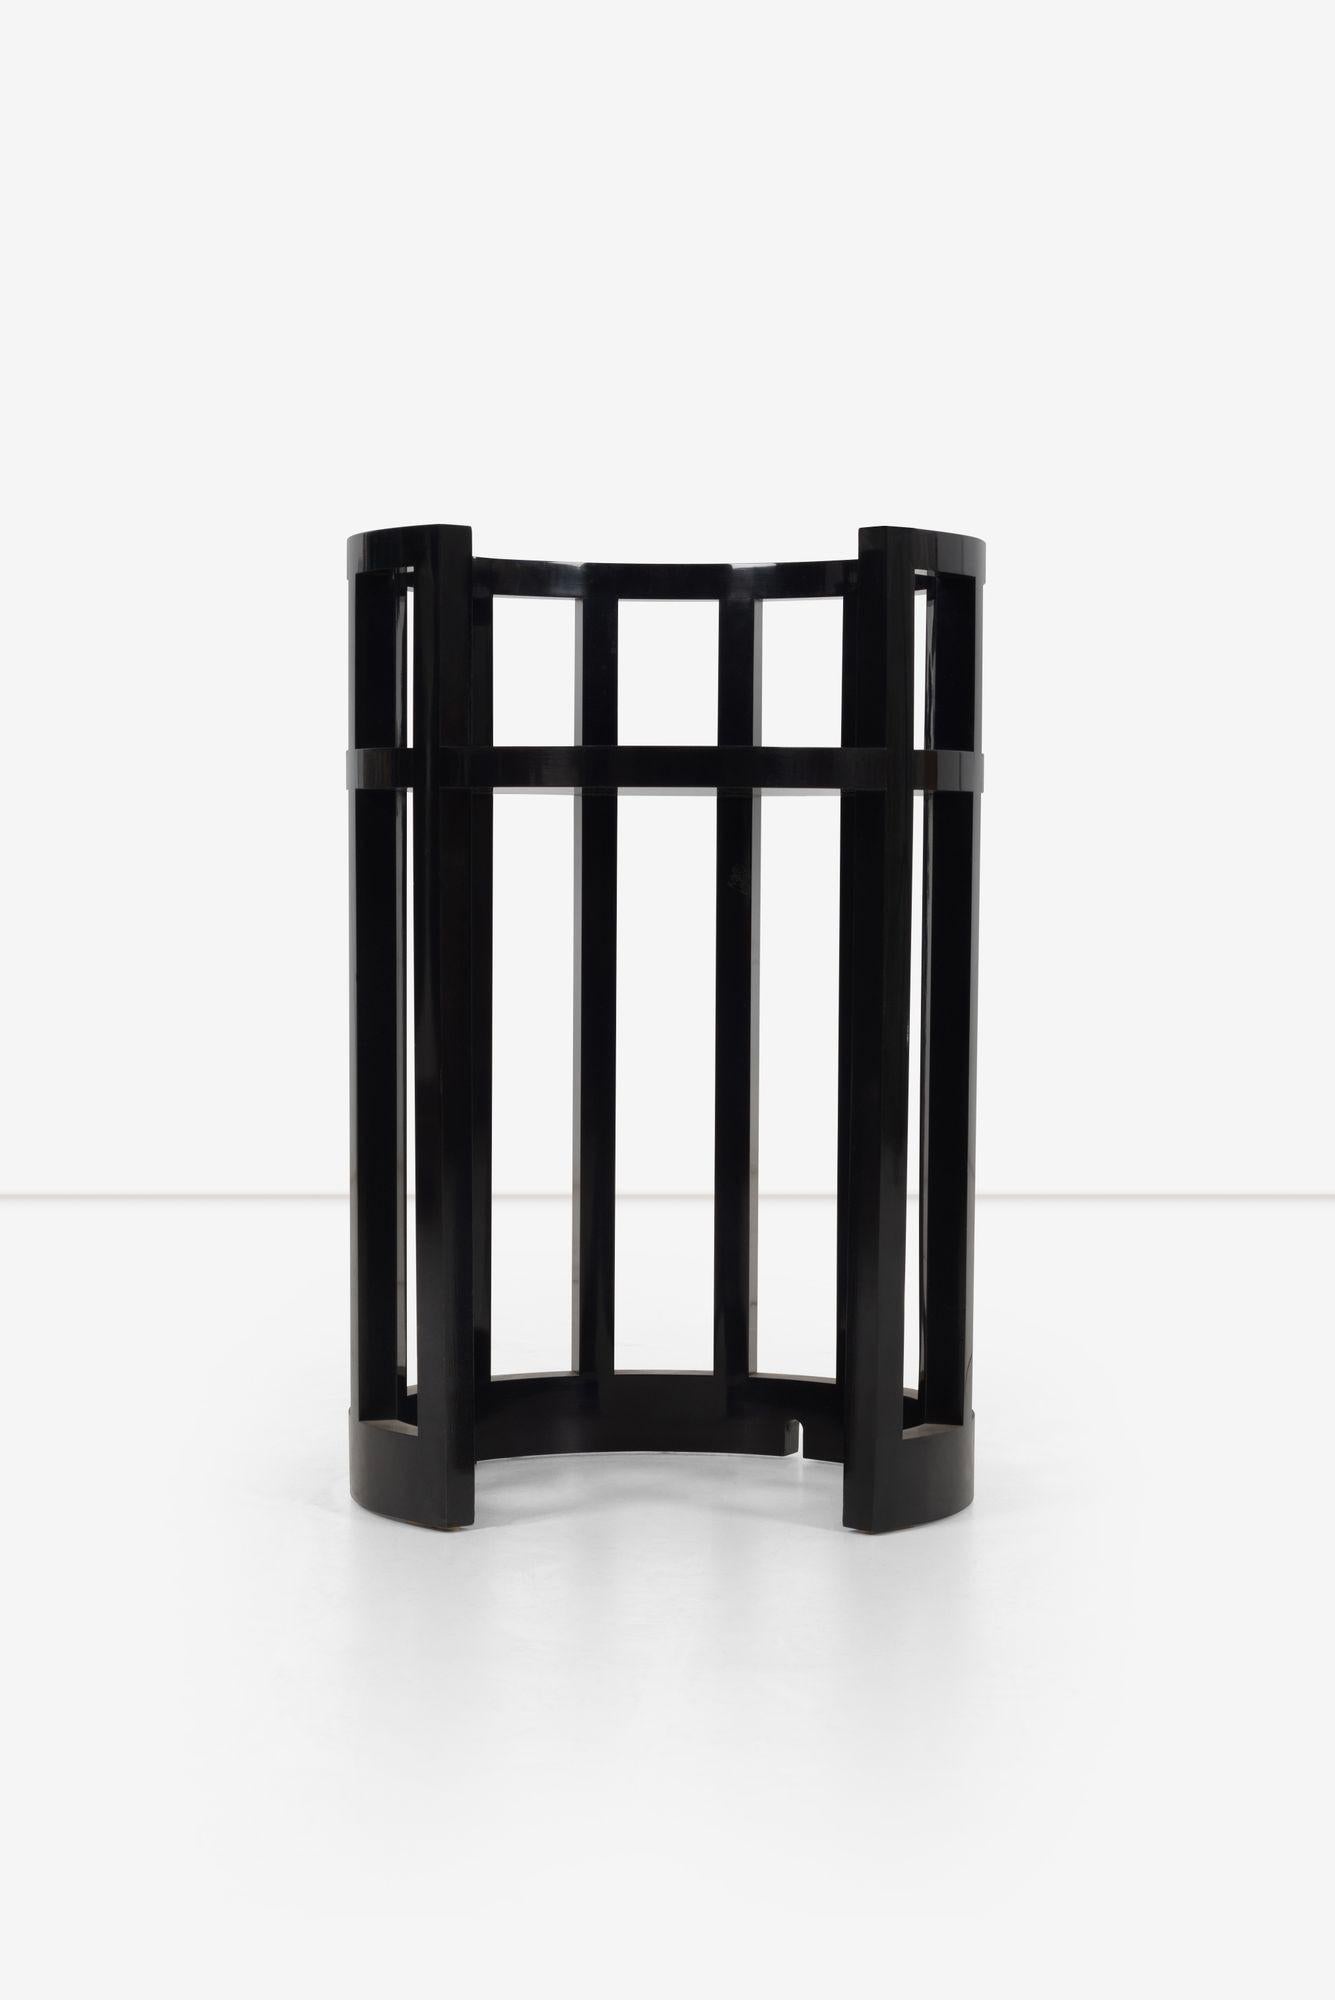 Table de lampe personnalisée de Richard Meier, laquée noire avec encoches pour le cordon.
Hauteur de la surface 21.50